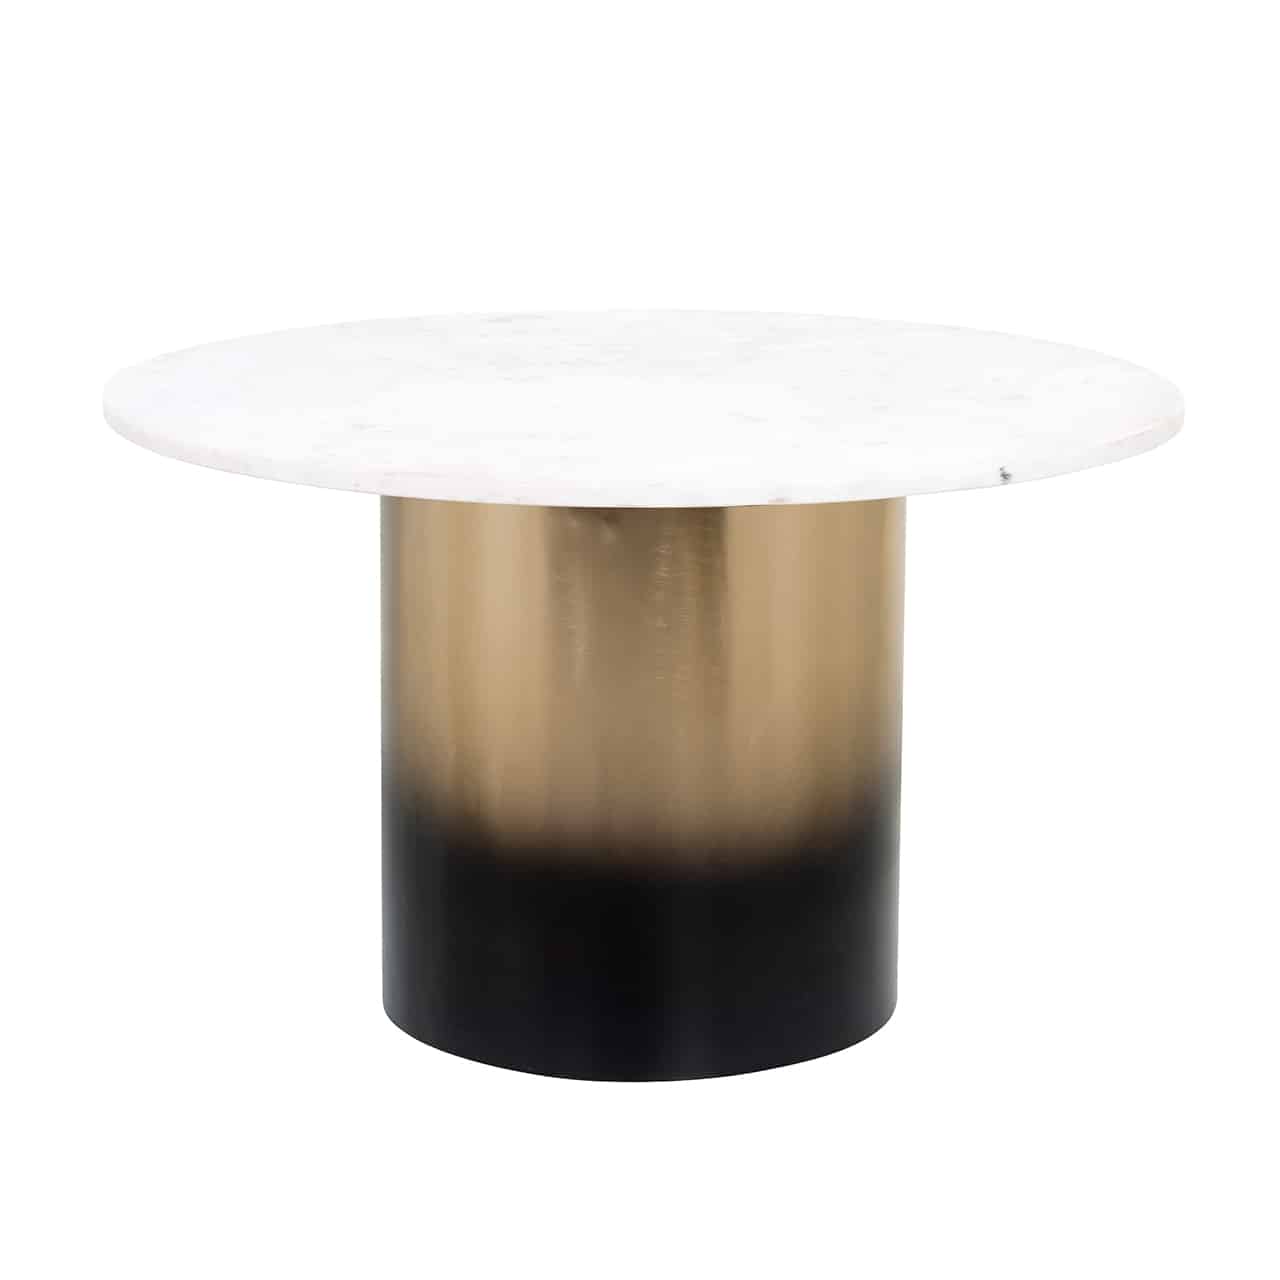 Couchtisch mit einem breiten, zylinderförmigen Fuß  unten schwarz, der nach oben in gold übergeht; darauf eine runde, weiße Marmorplatte.